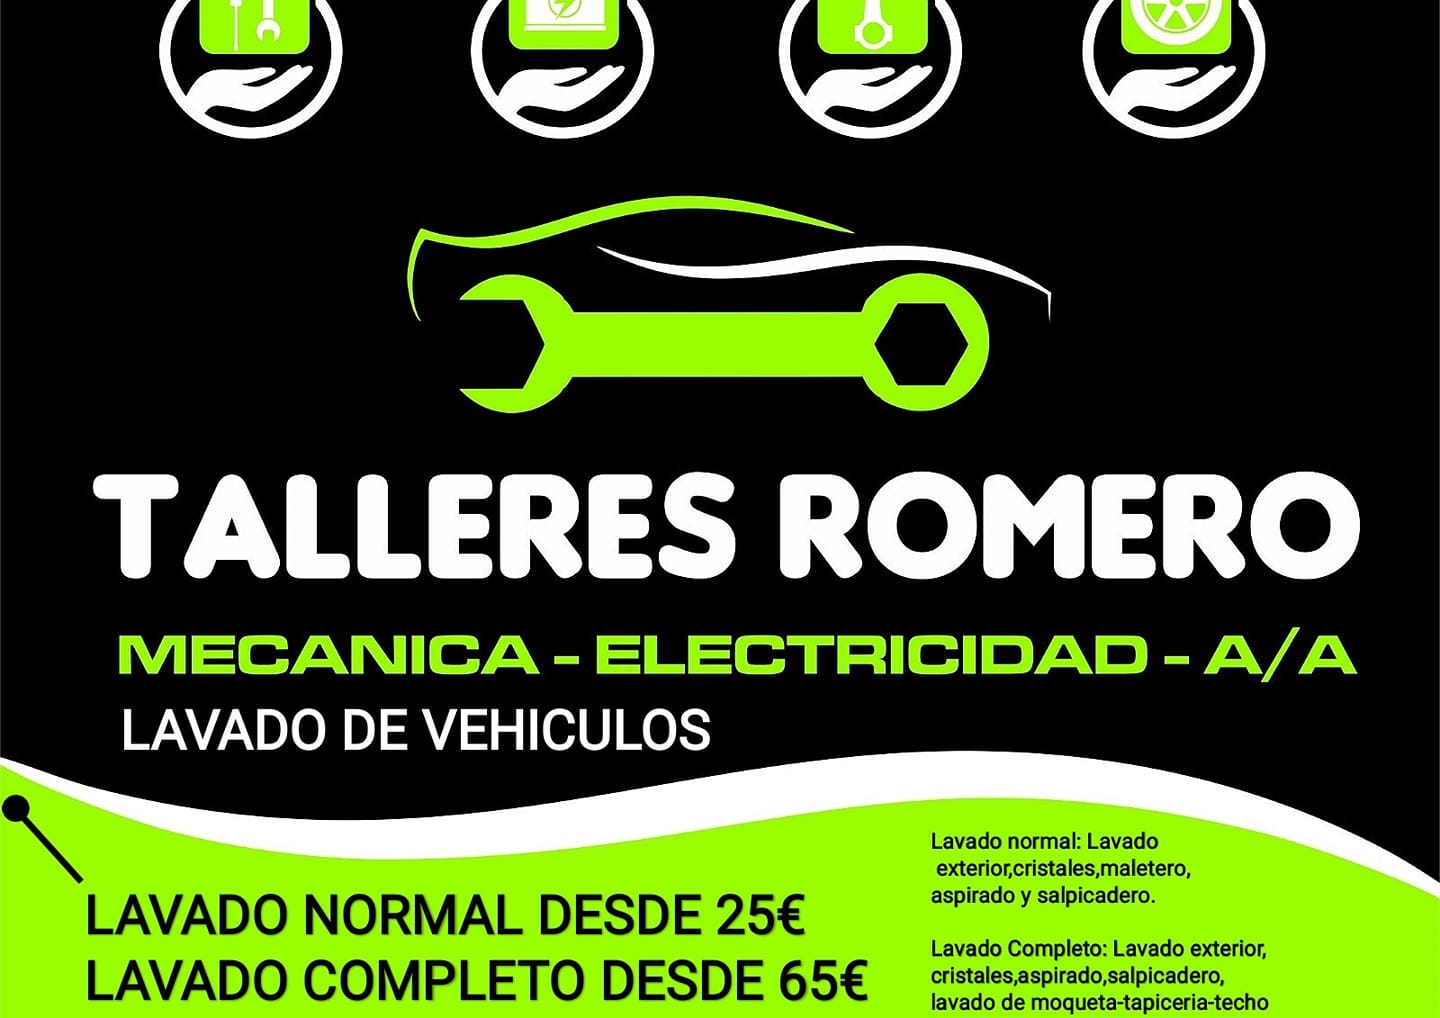 Talleres Romero